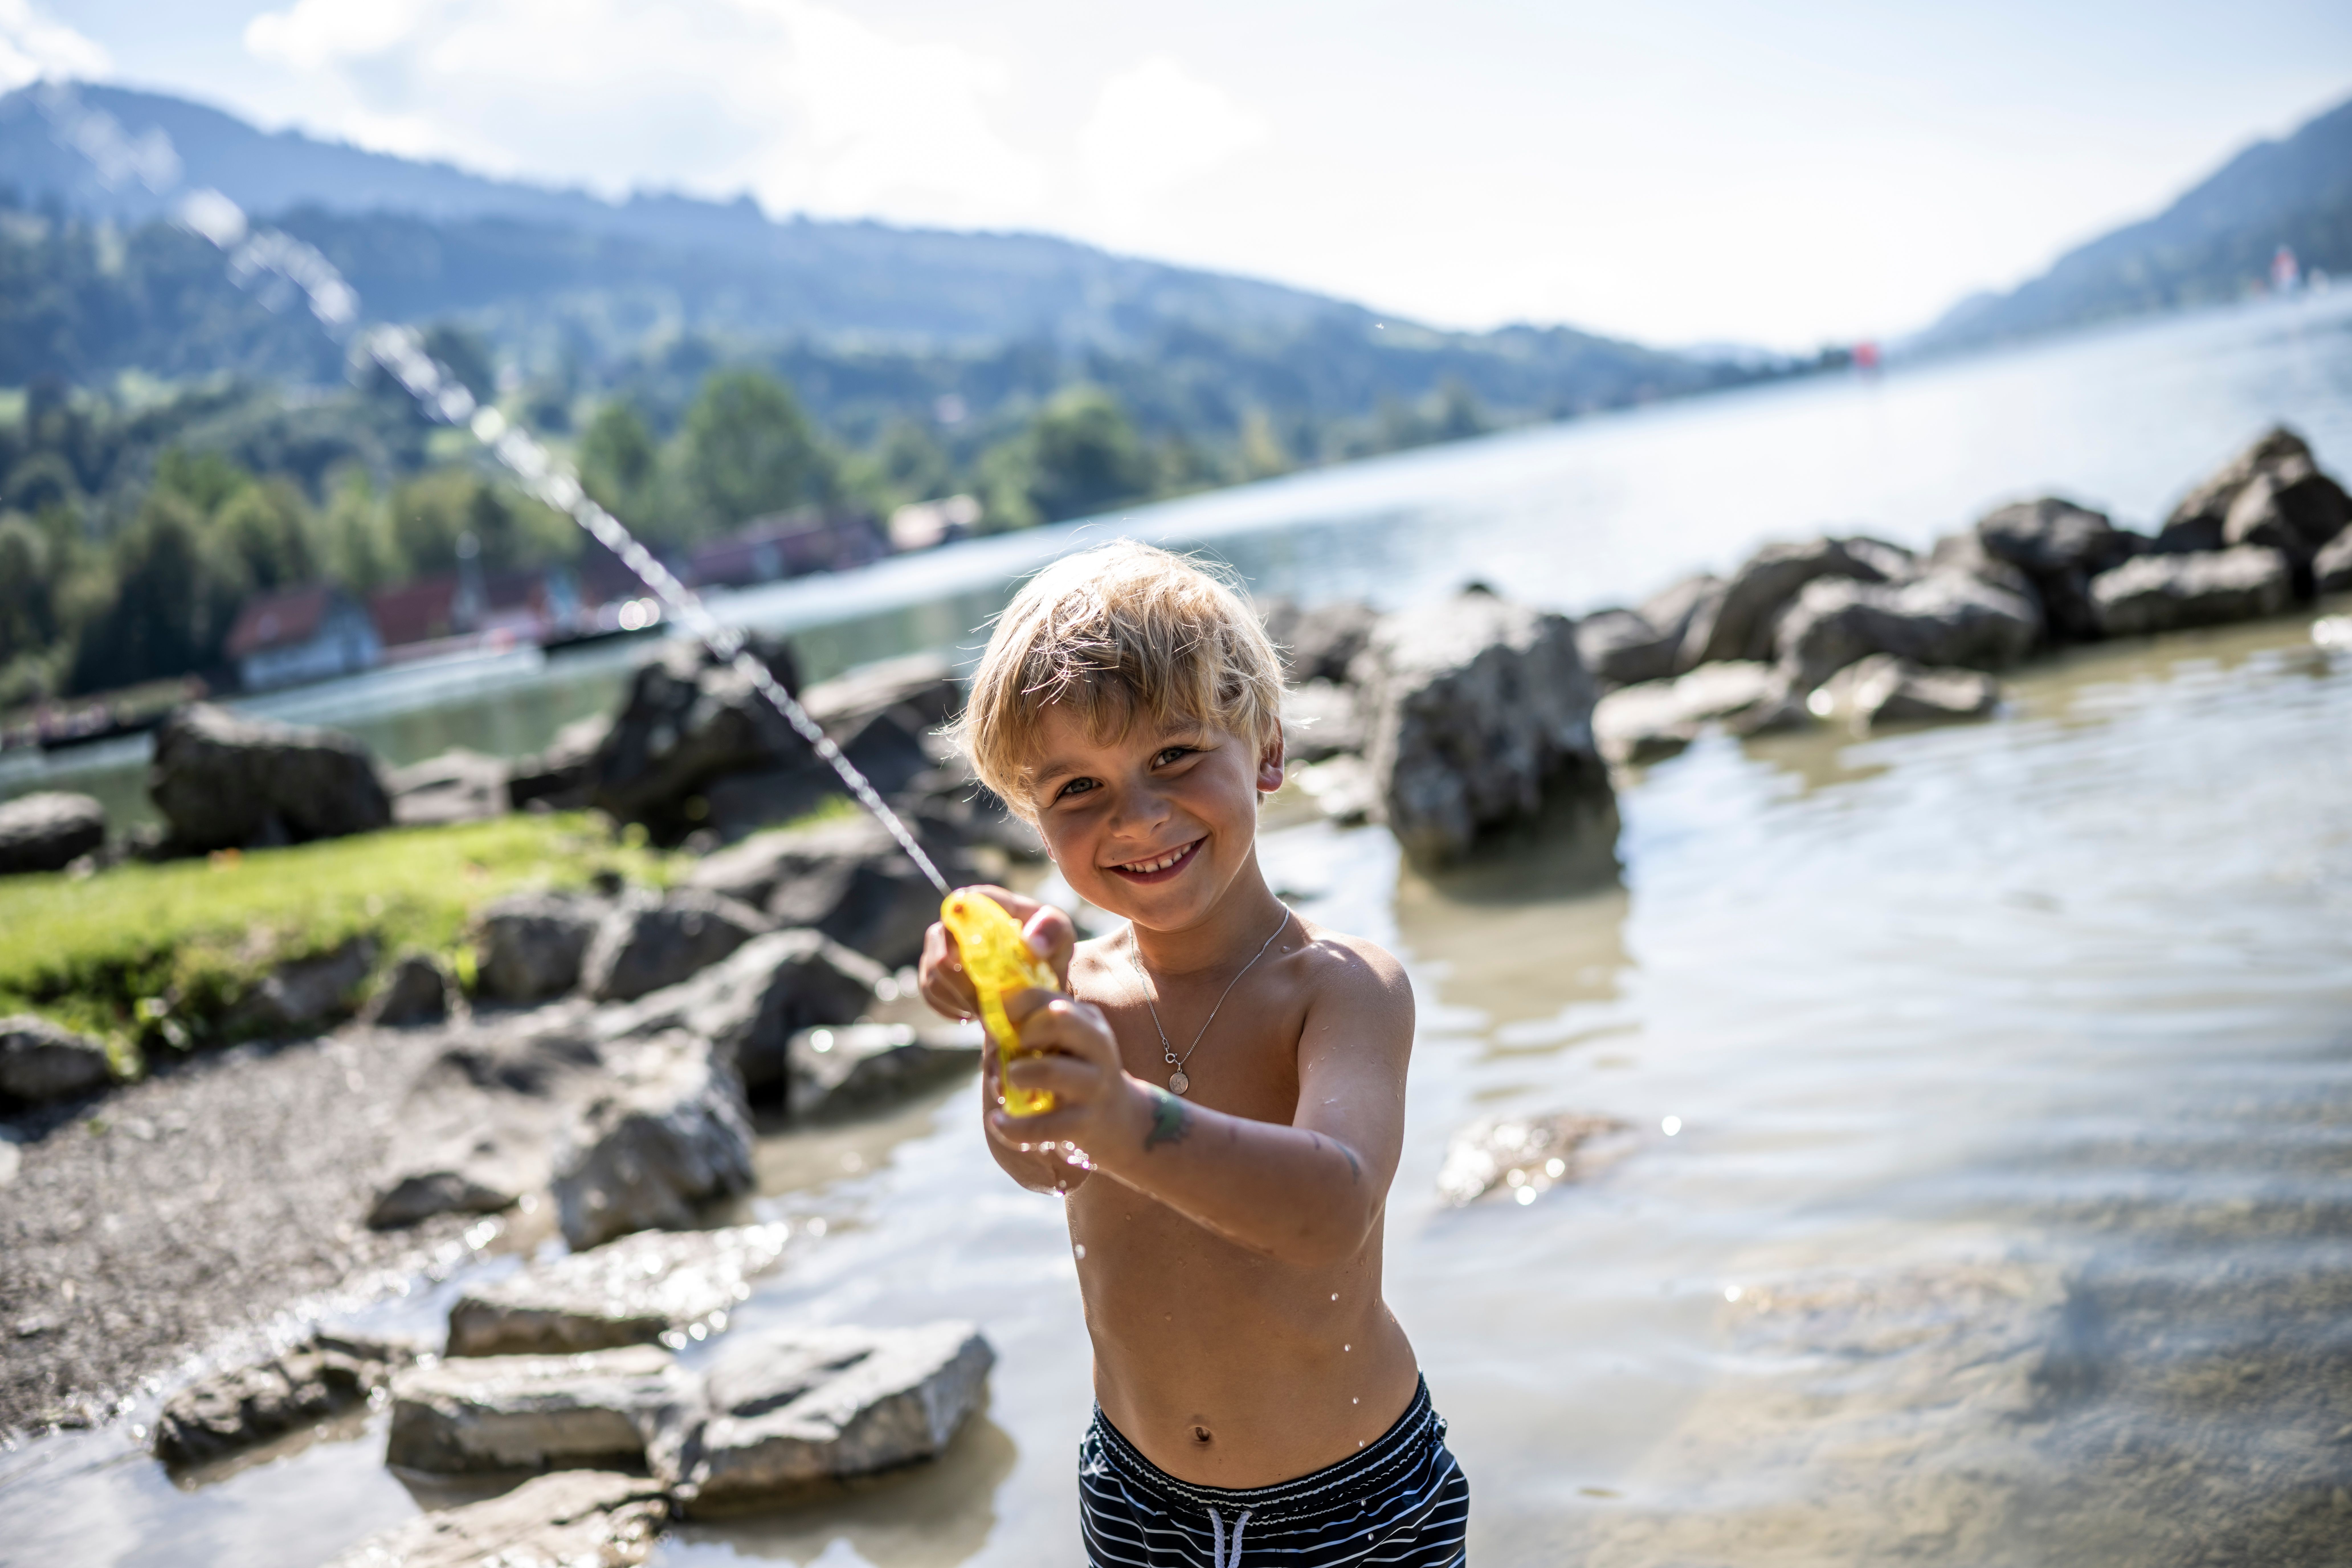 Ein Junge steht im großen Alpsee bei Immenstadt und spielt mit seiner Wasserpistole. Mit einem Umfang von 8 km ist der Natursee umrundet von Grünflächen aber auch Kies, Steinen und Sand.